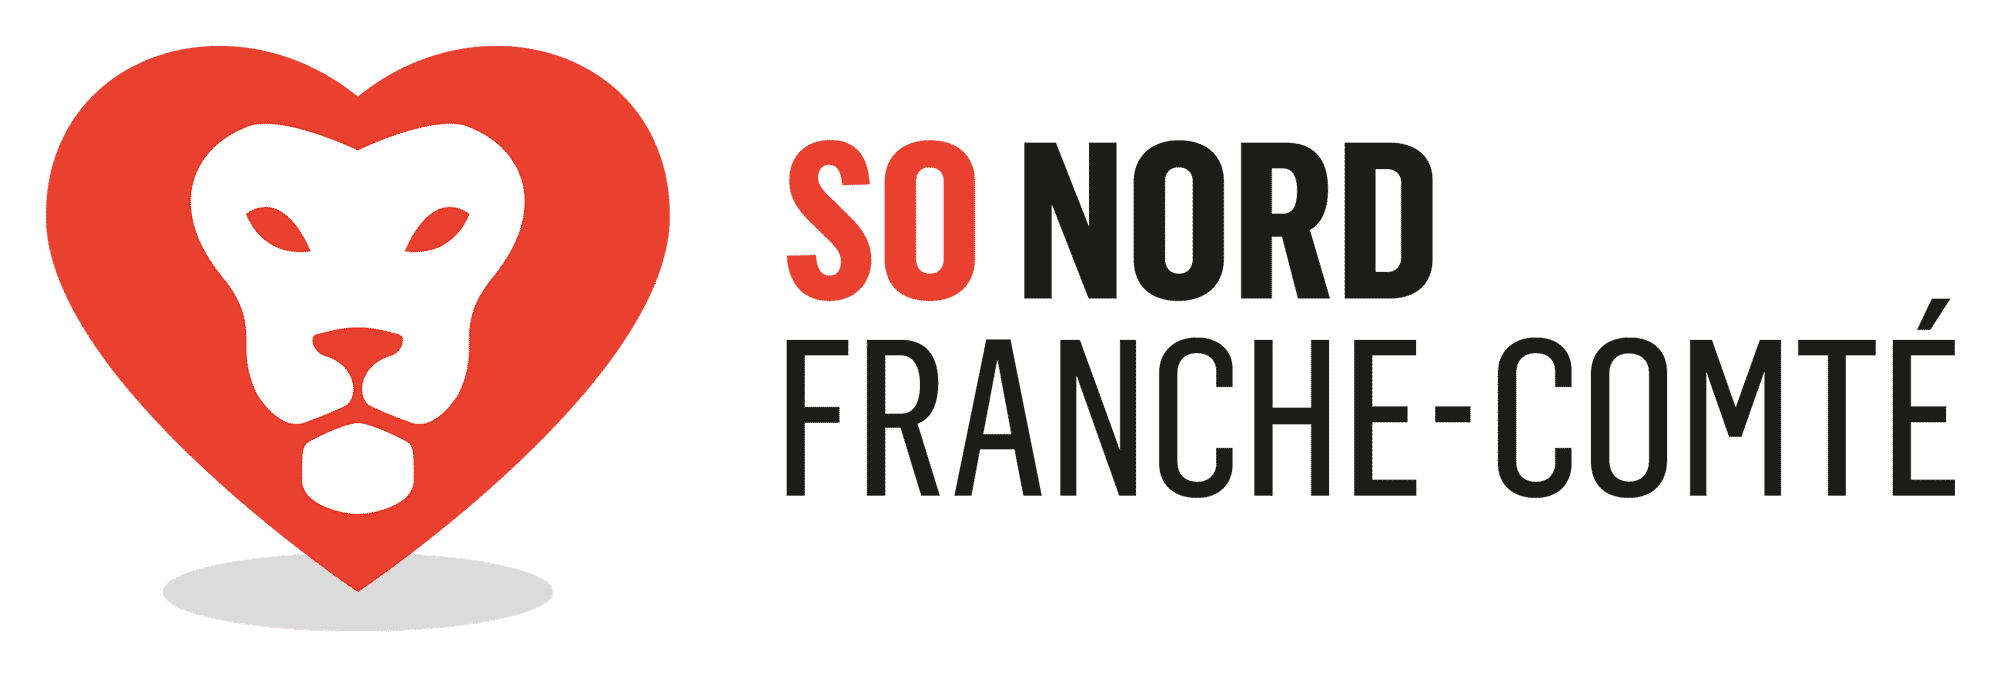 SO NORD FRANCHE COMPÉ - RH Partners